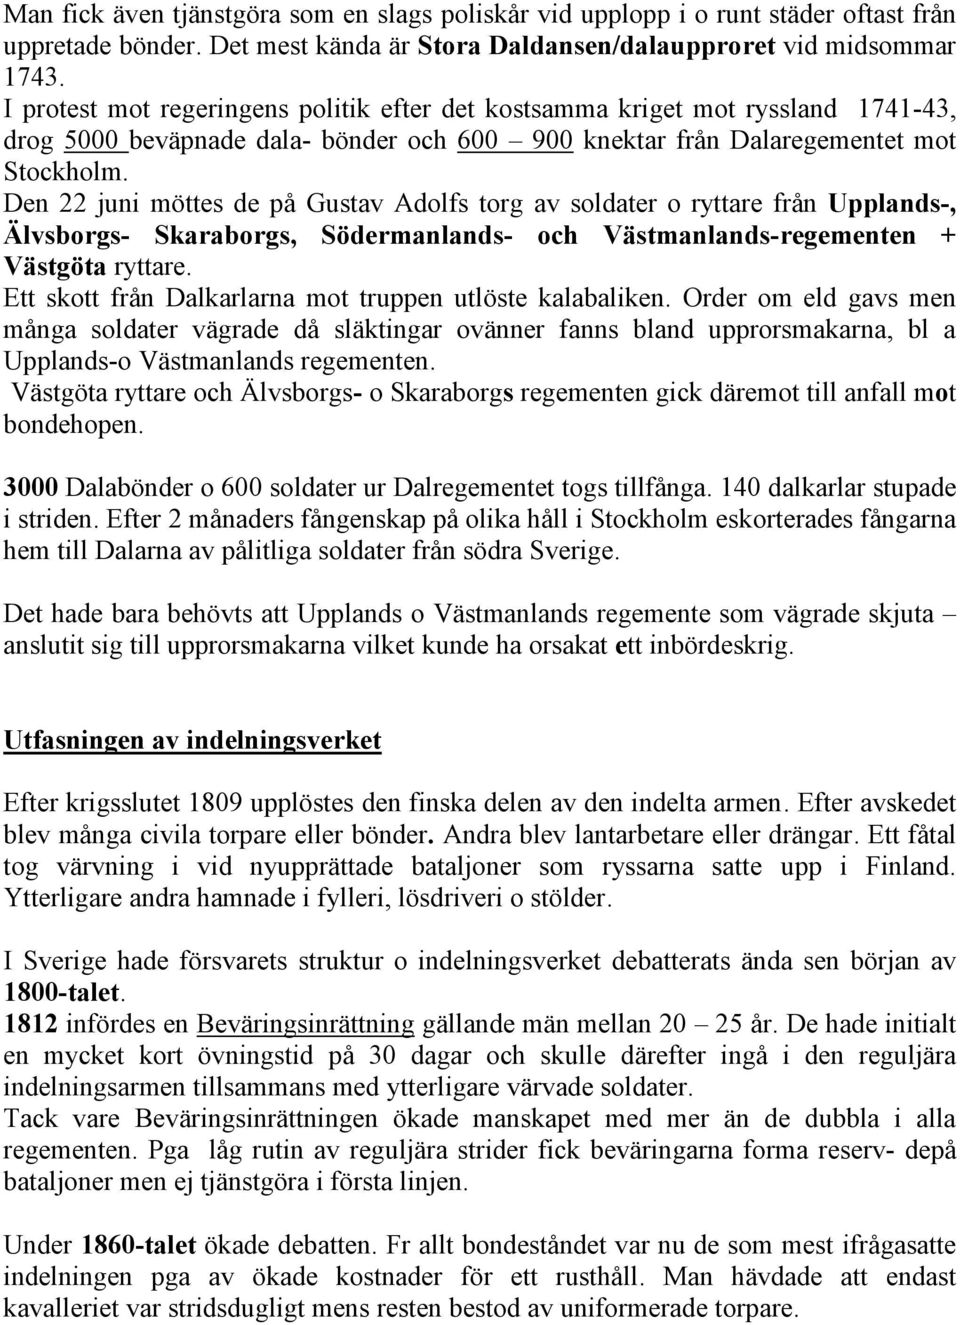 Den 22 juni möttes de på Gustav Adolfs torg av soldater o ryttare från Upplands-, Älvsborgs- Skaraborgs, Södermanlands- och Västmanlands-regementen + Västgöta ryttare.